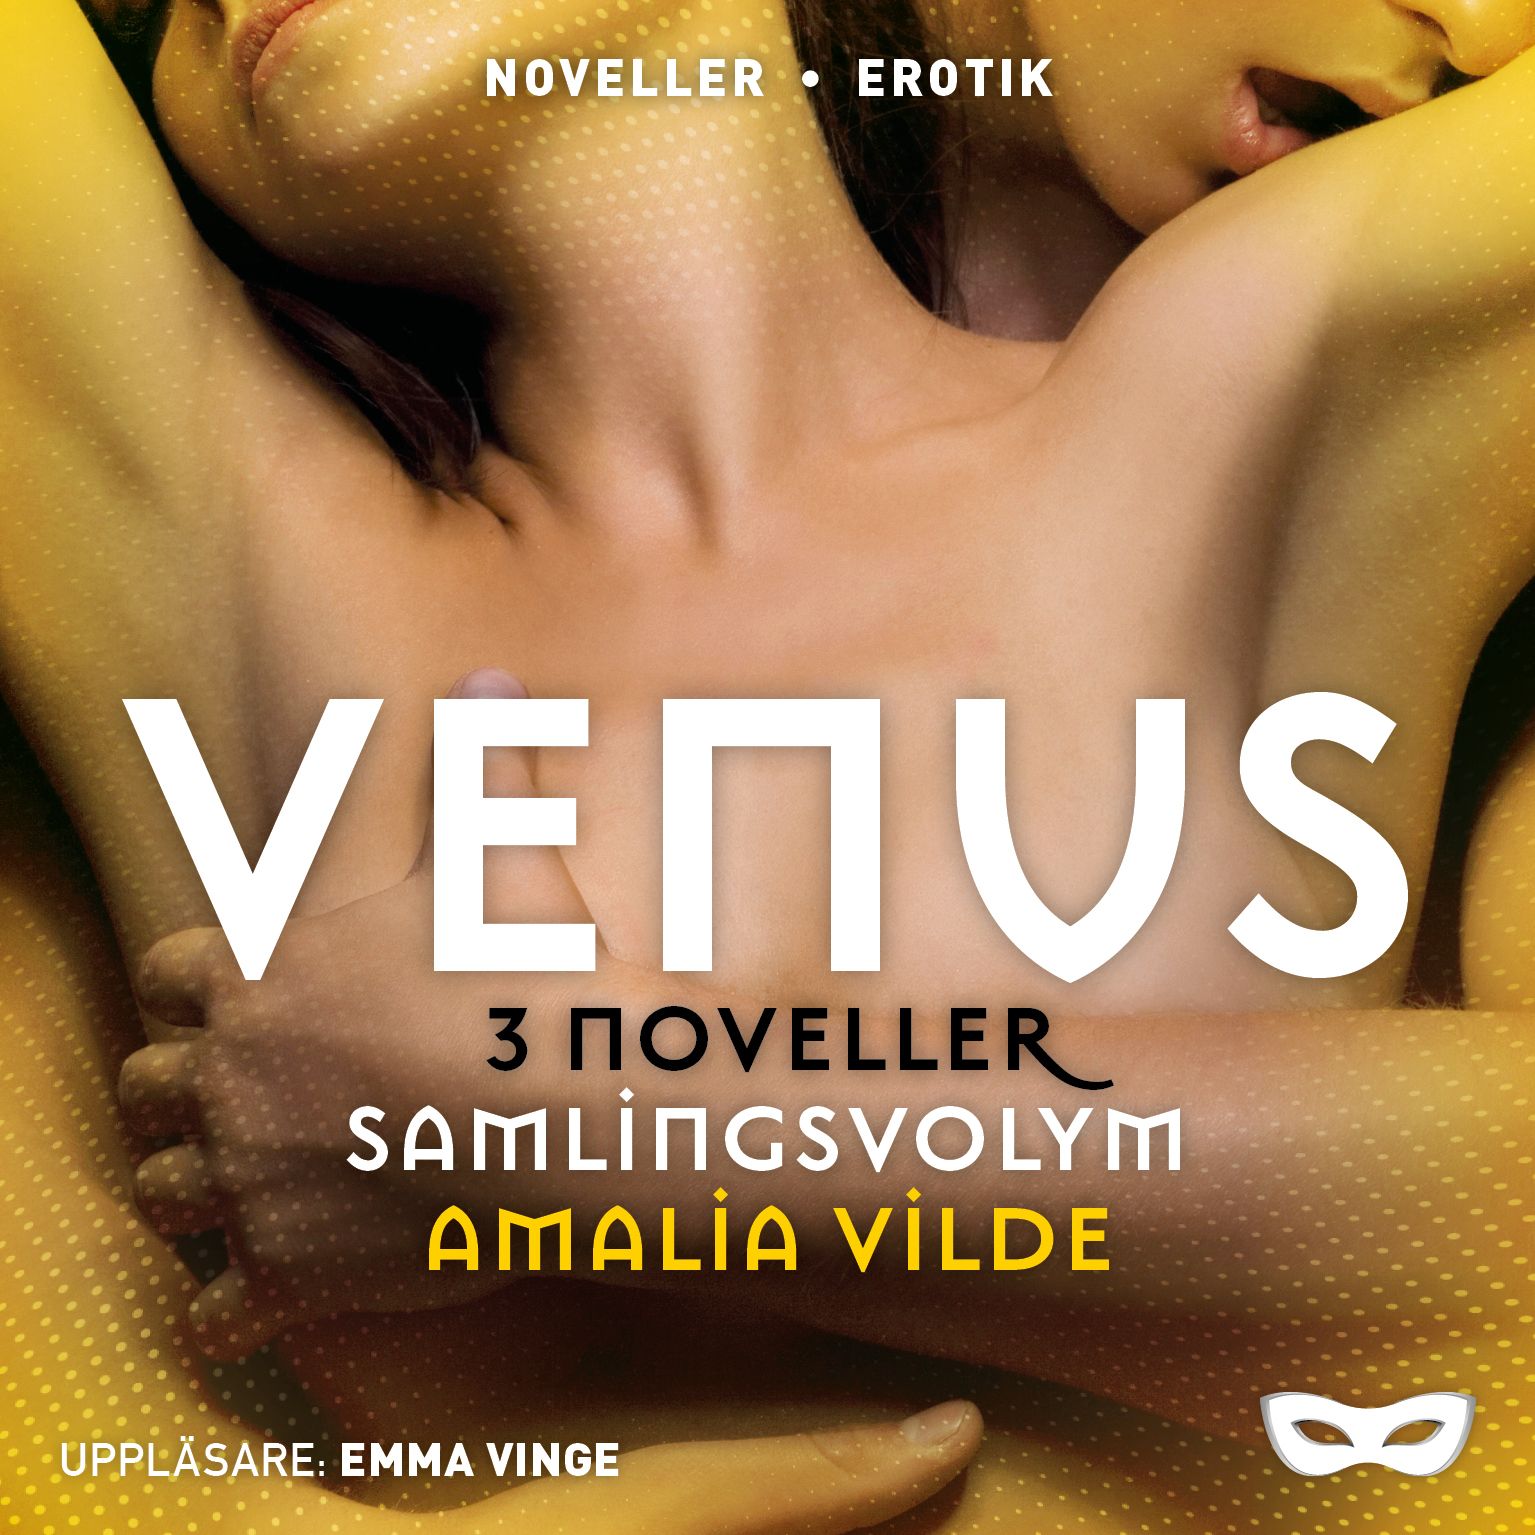 Venus 3 noveller (samlingsvolym), ljudbok av Amalia Vilde